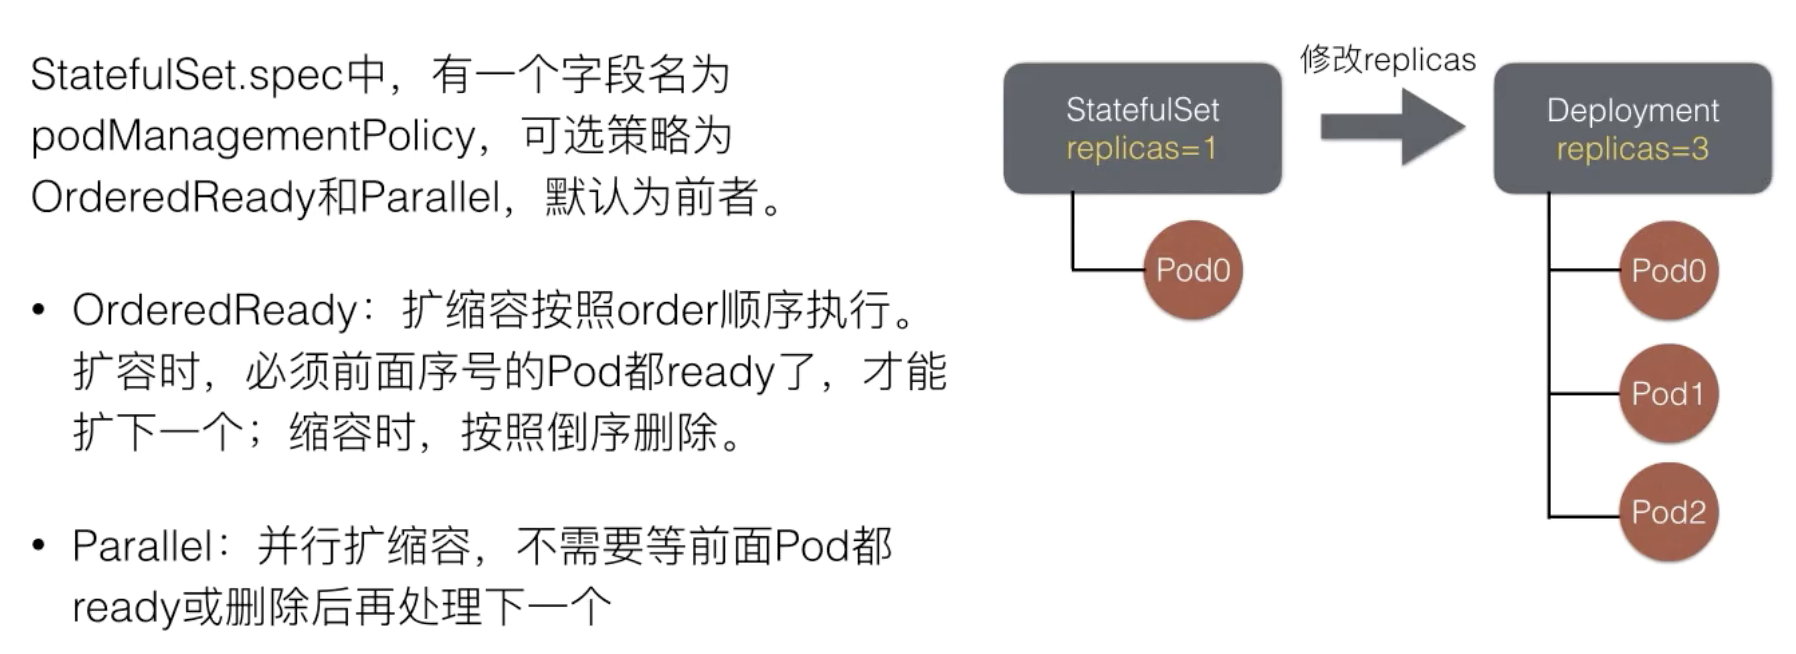 如何理解StatefulSet中应用编排工具Deployment